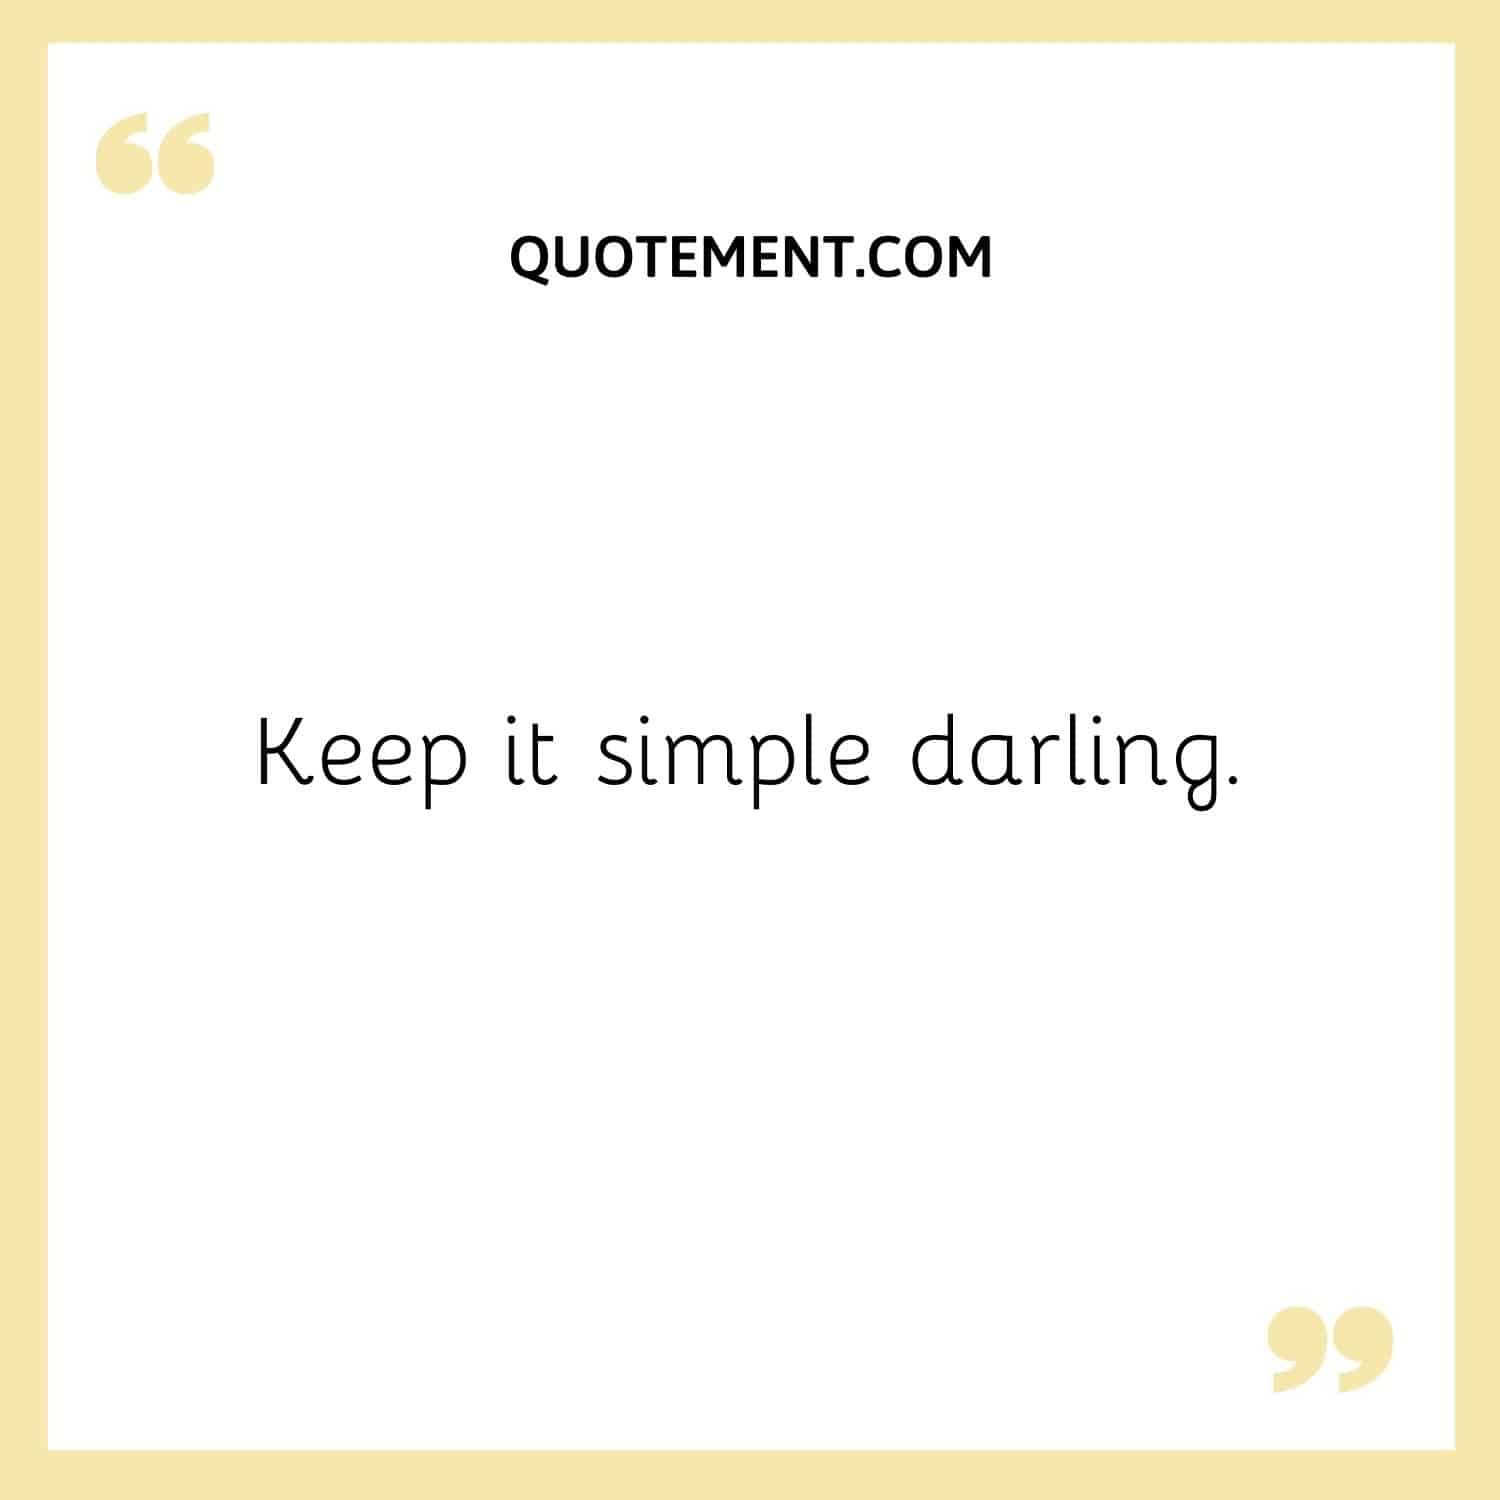 Keep it simple darling.